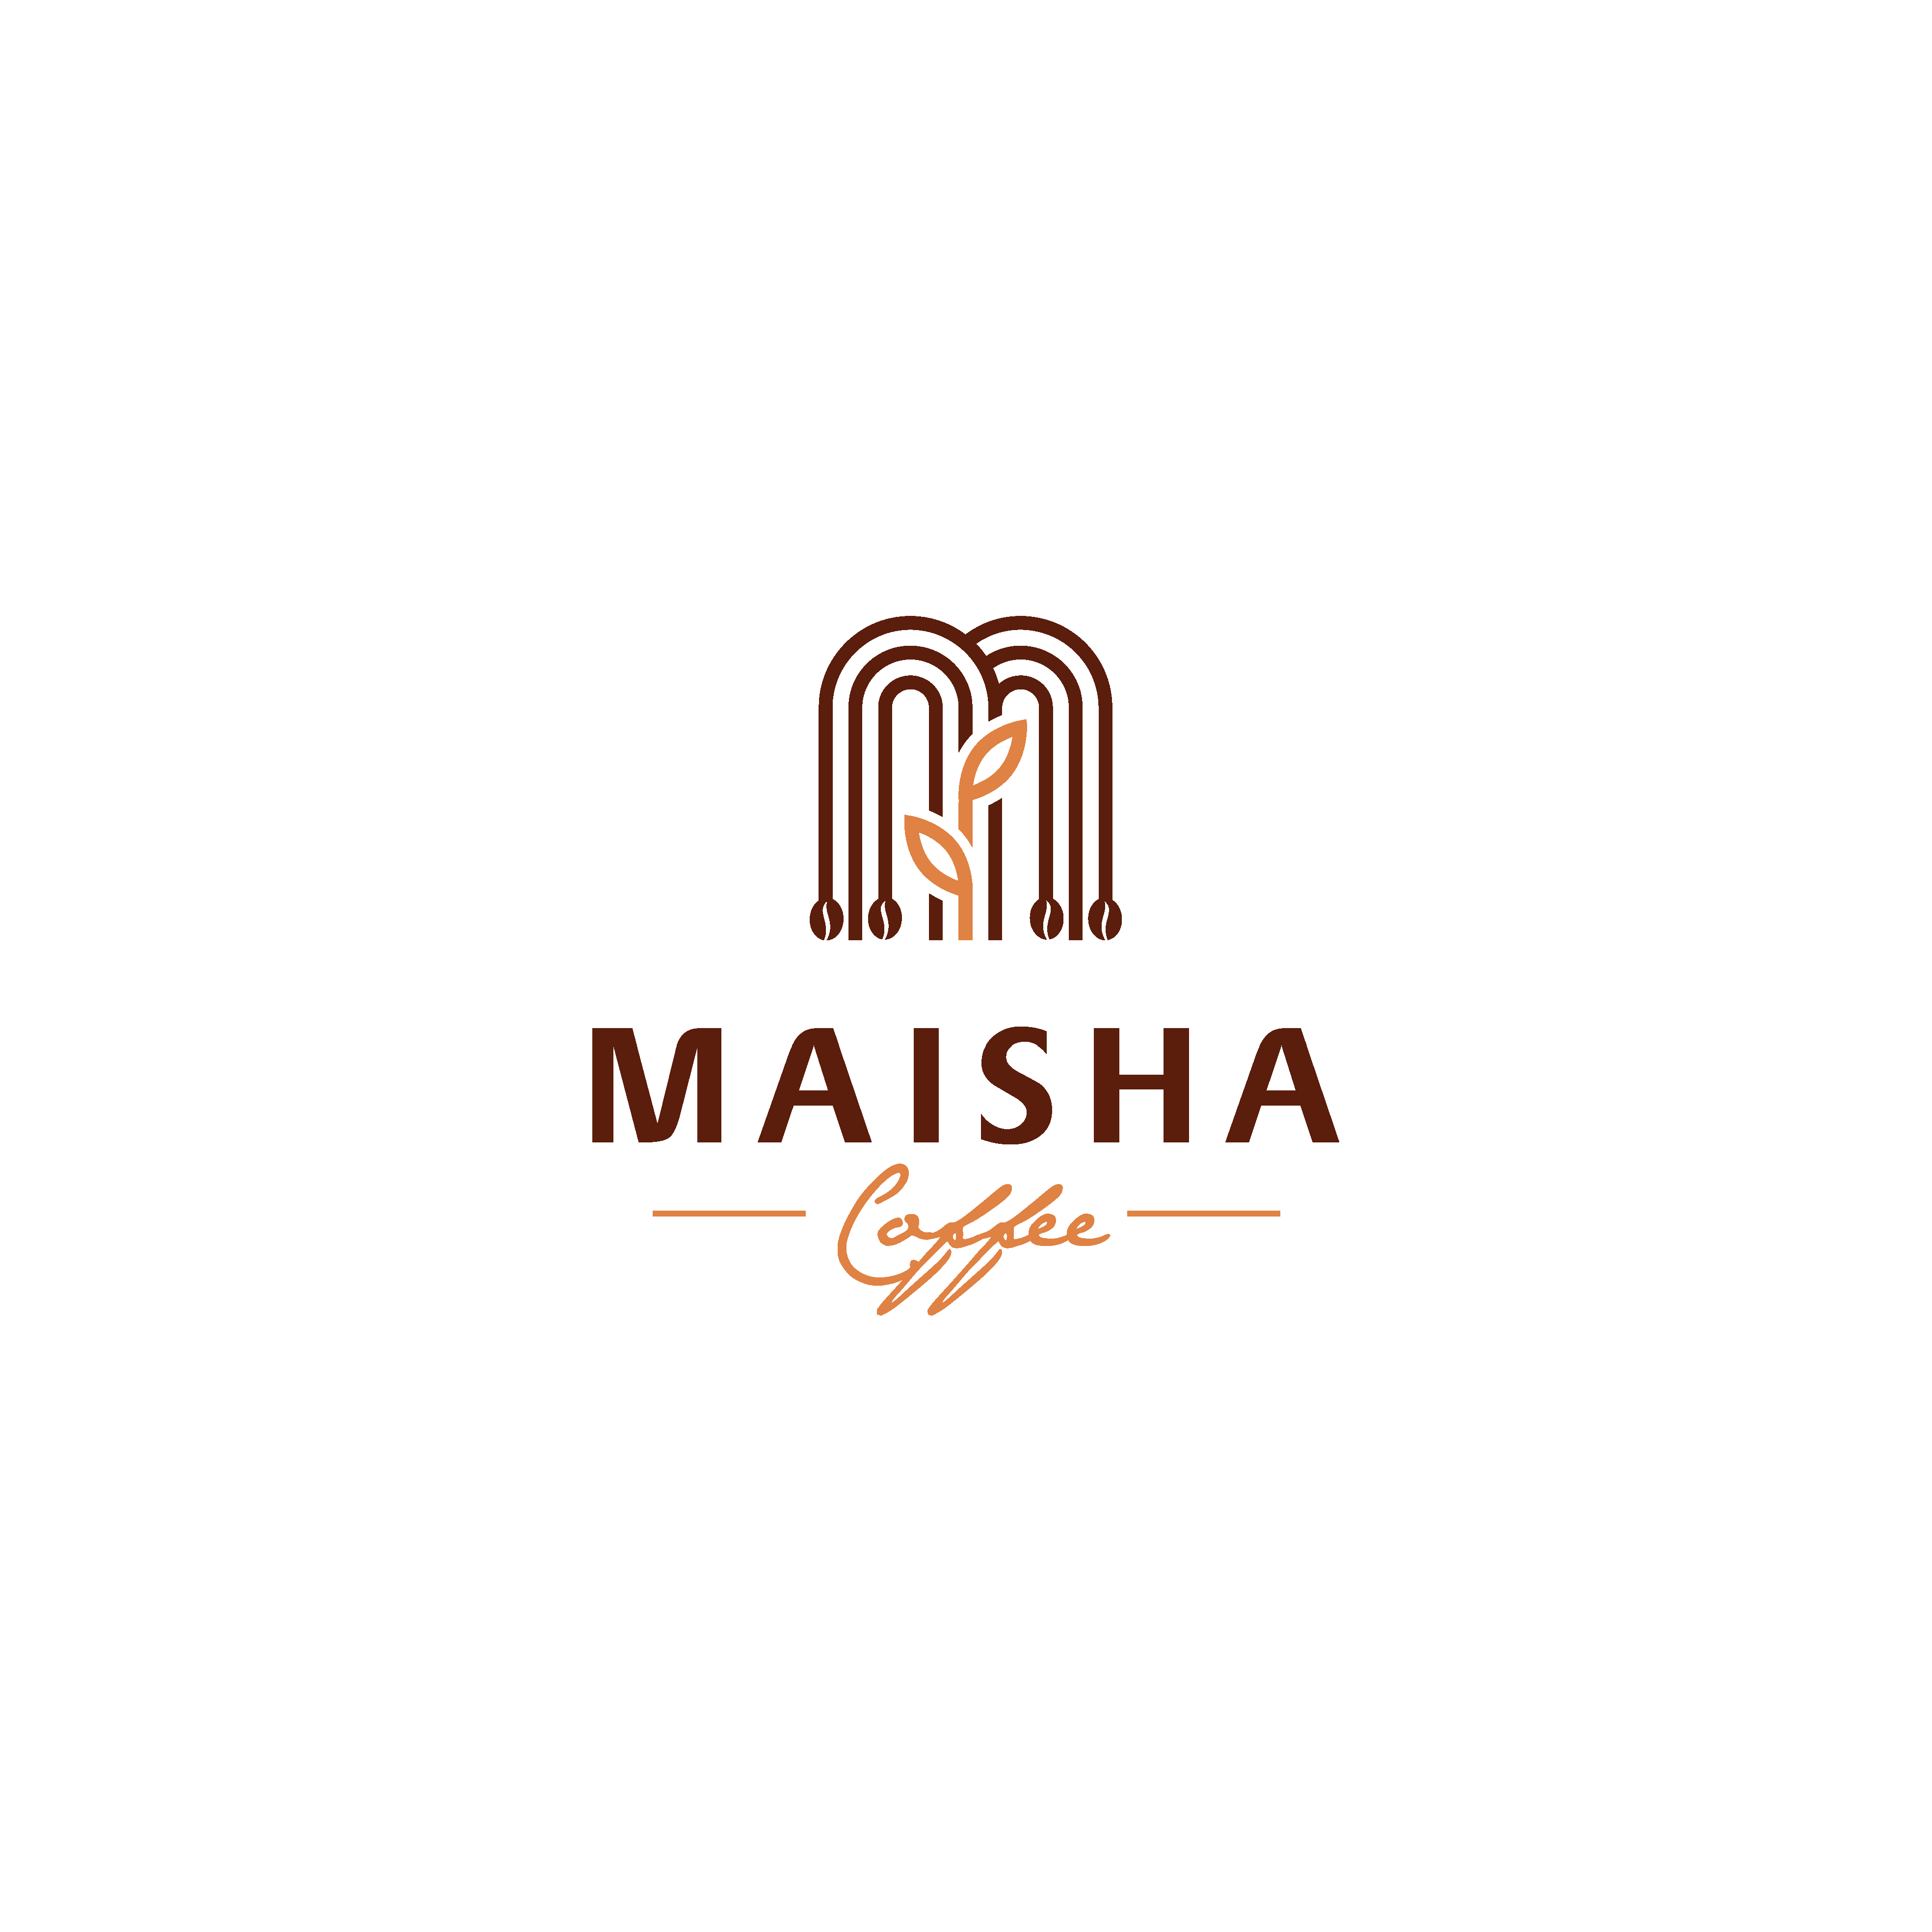 Maisha Coffee